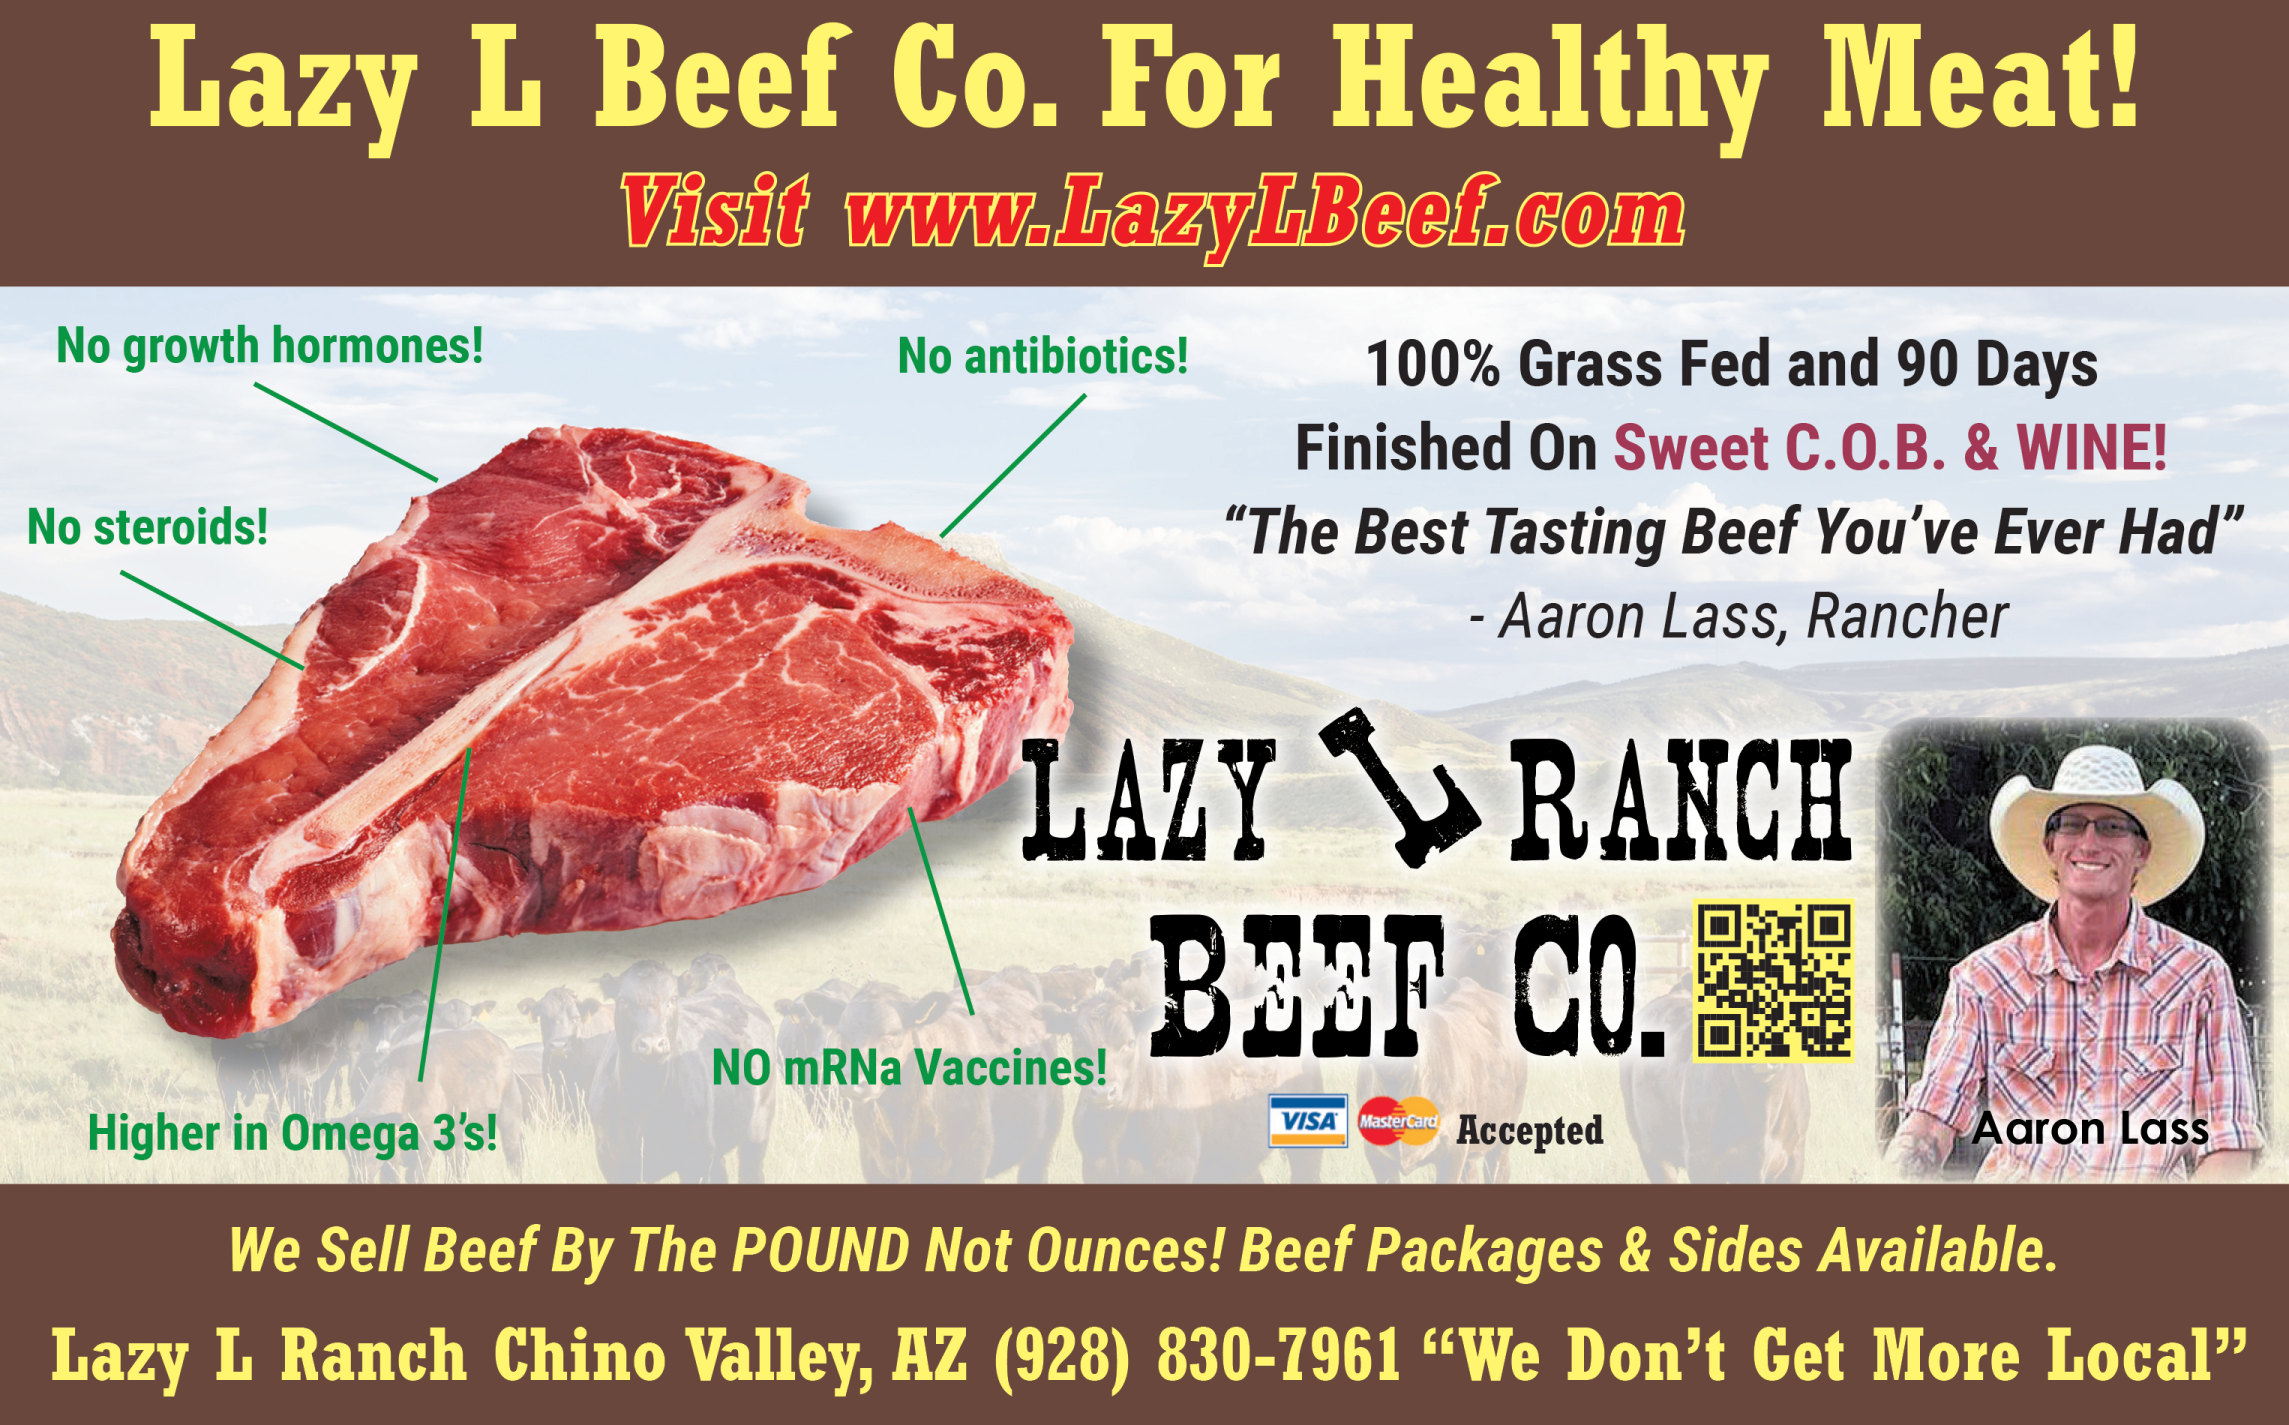 Lazy L Ranch Beef Chino Valley, AZ Arizona Kobe